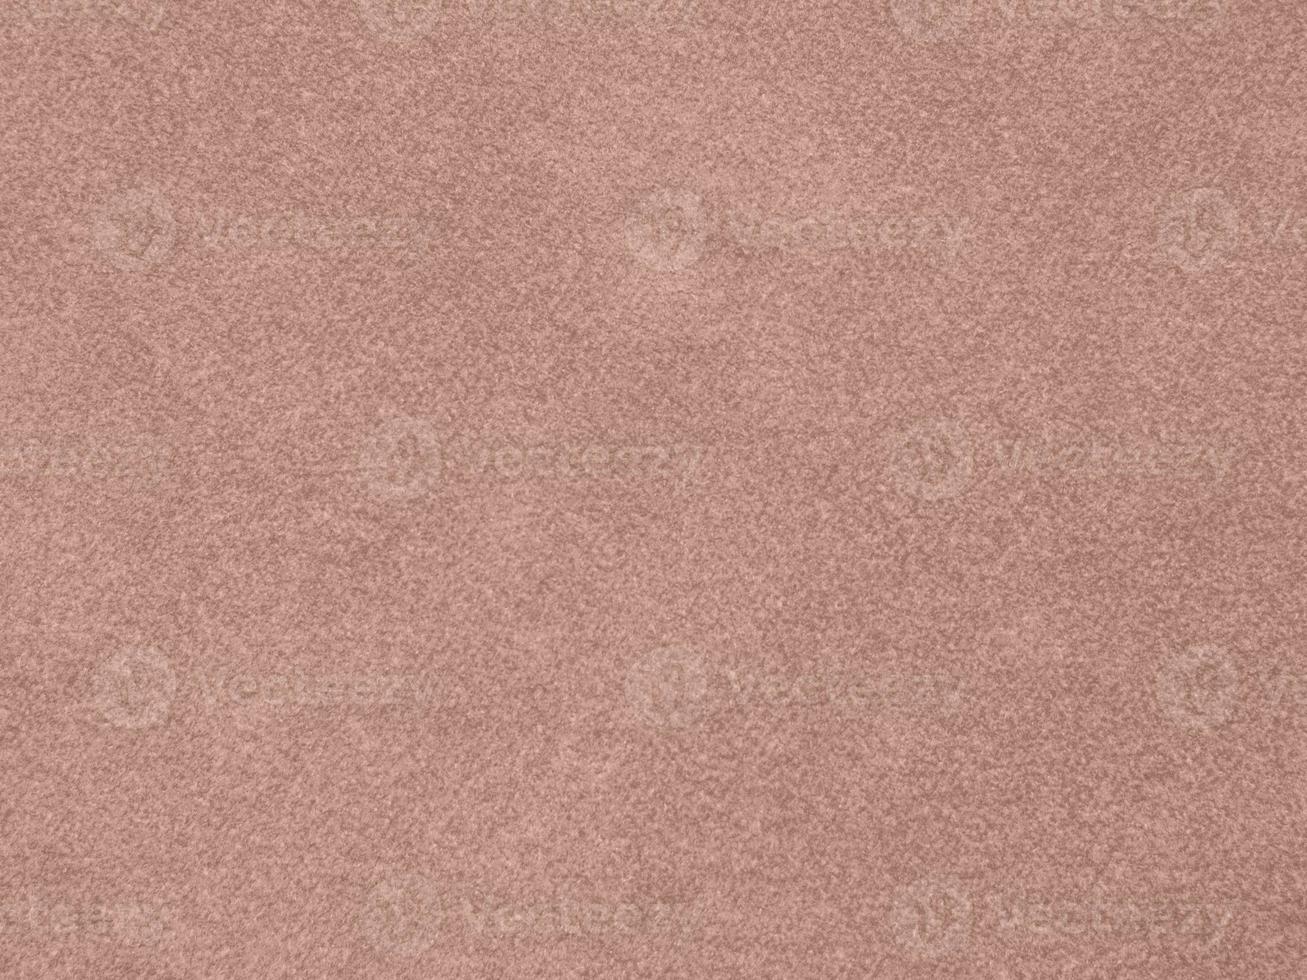 textura de tela de terciopelo color oro rosa utilizada como fondo. fondo de tela de oro rosa vacío de material textil suave y liso. hay espacio para el texto. foto